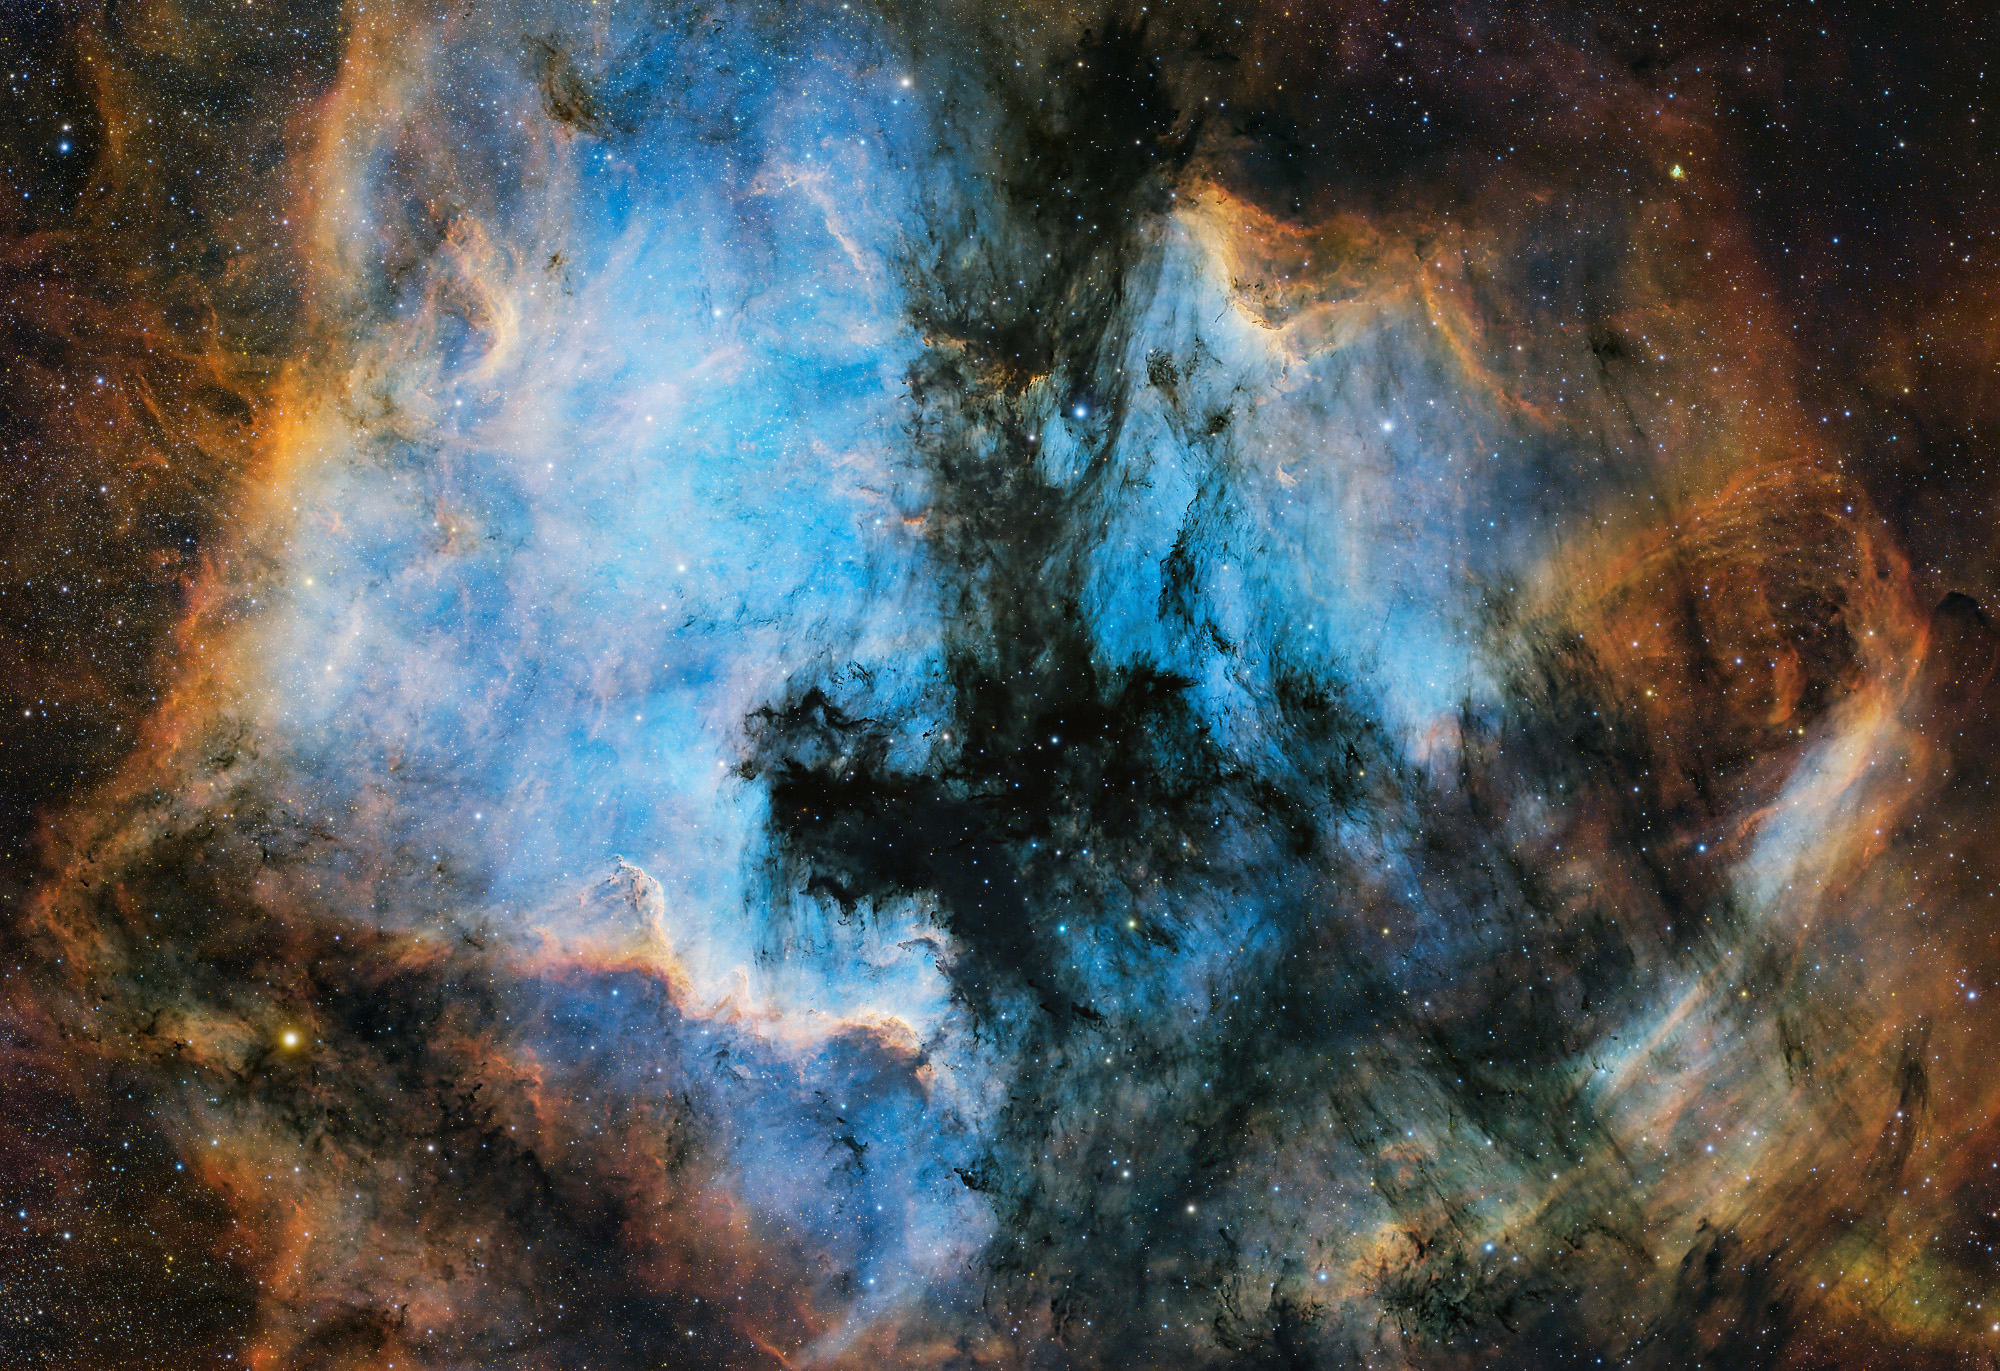  Kollár István: NGC 7000 – IC 5070